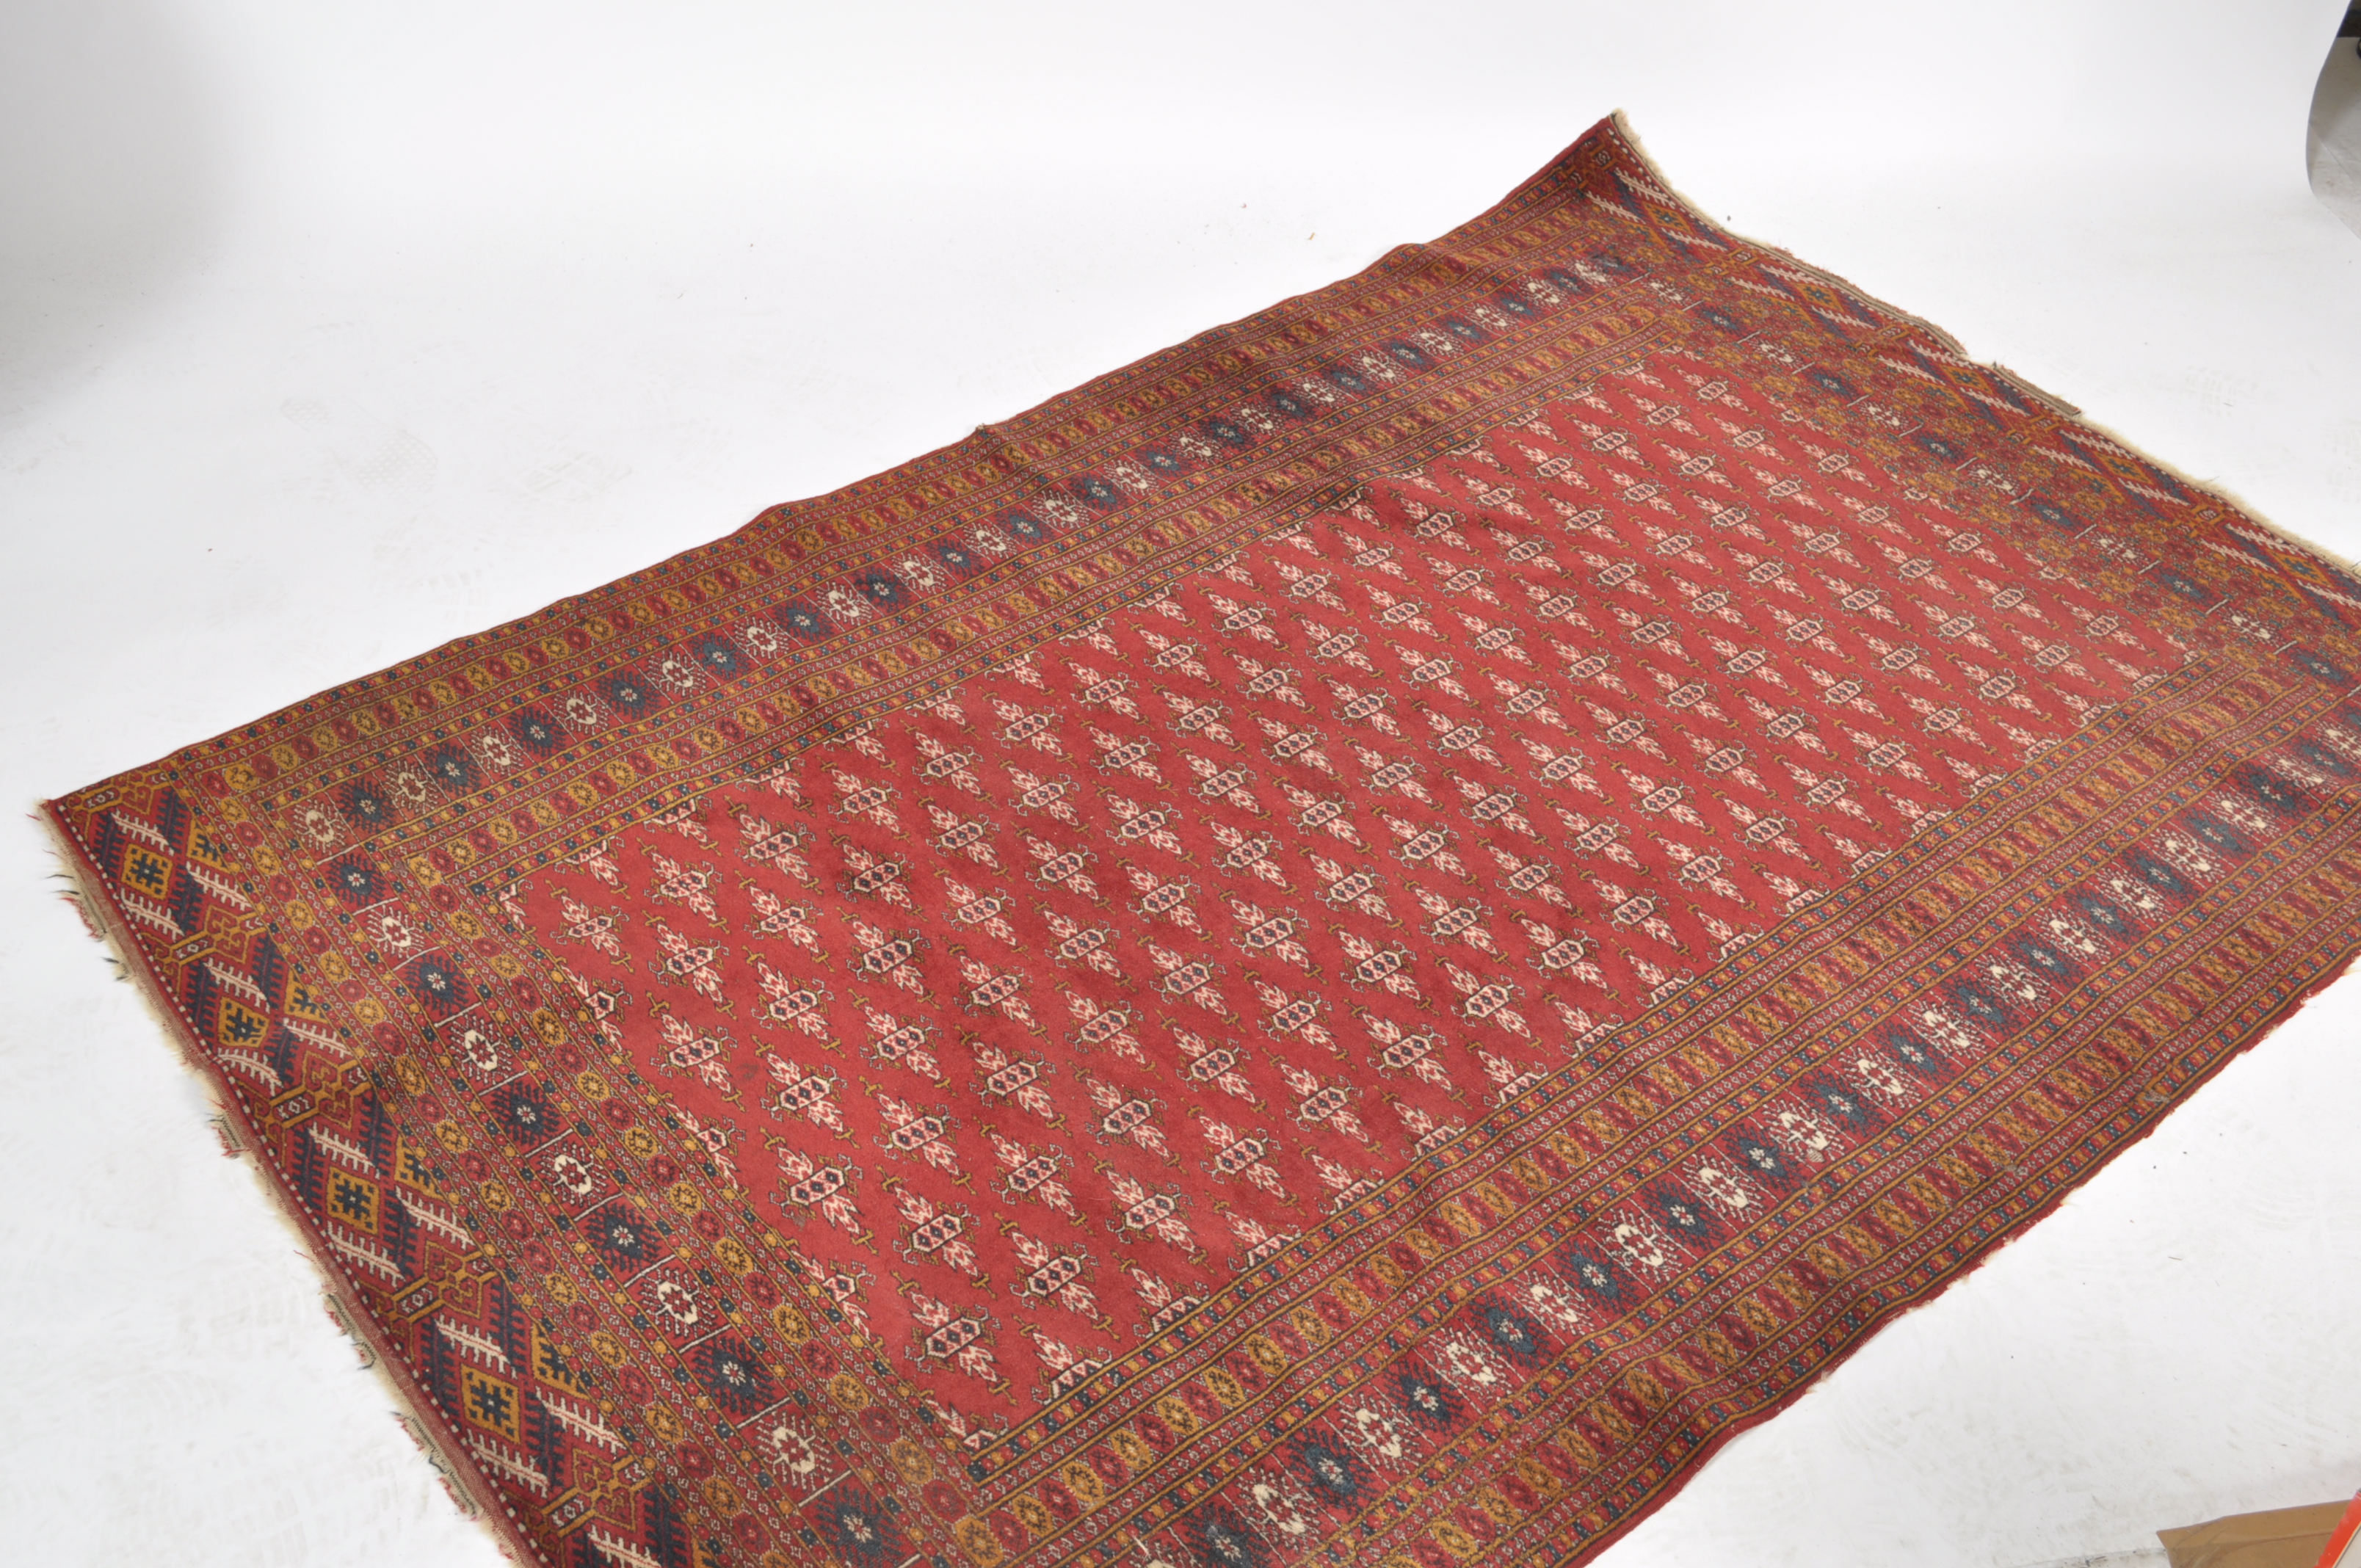 A vintage Uzbeki carpet rug being originally suppl